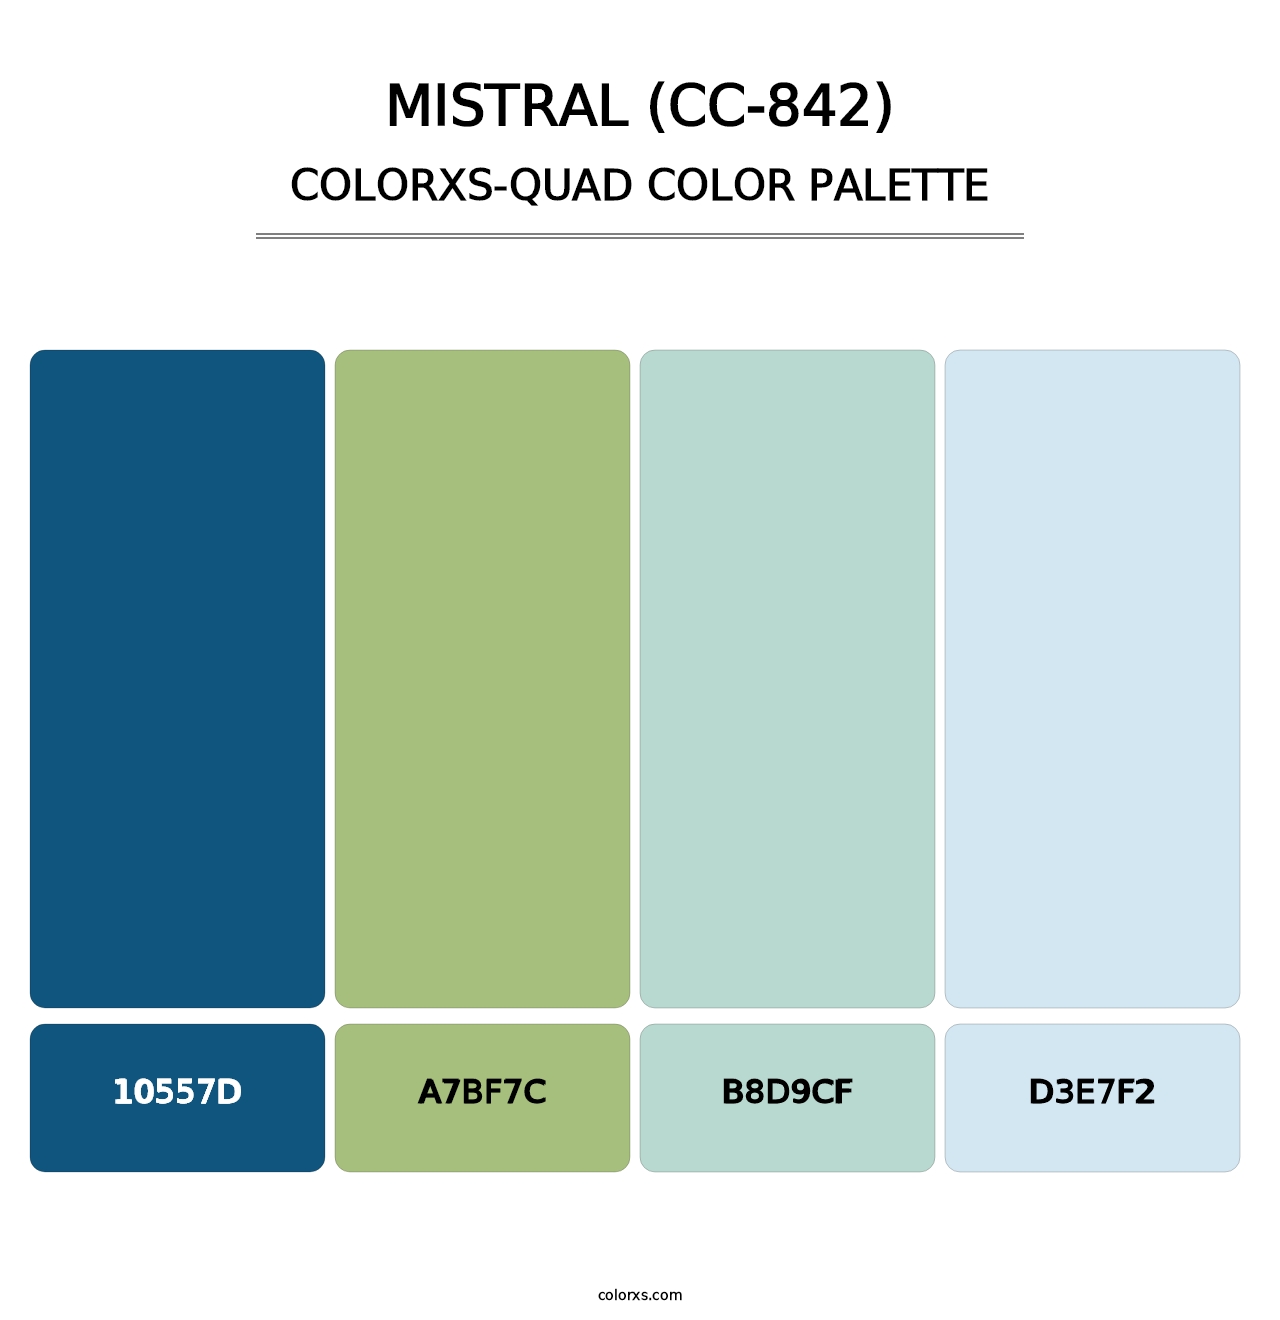 Mistral (CC-842) - Colorxs Quad Palette